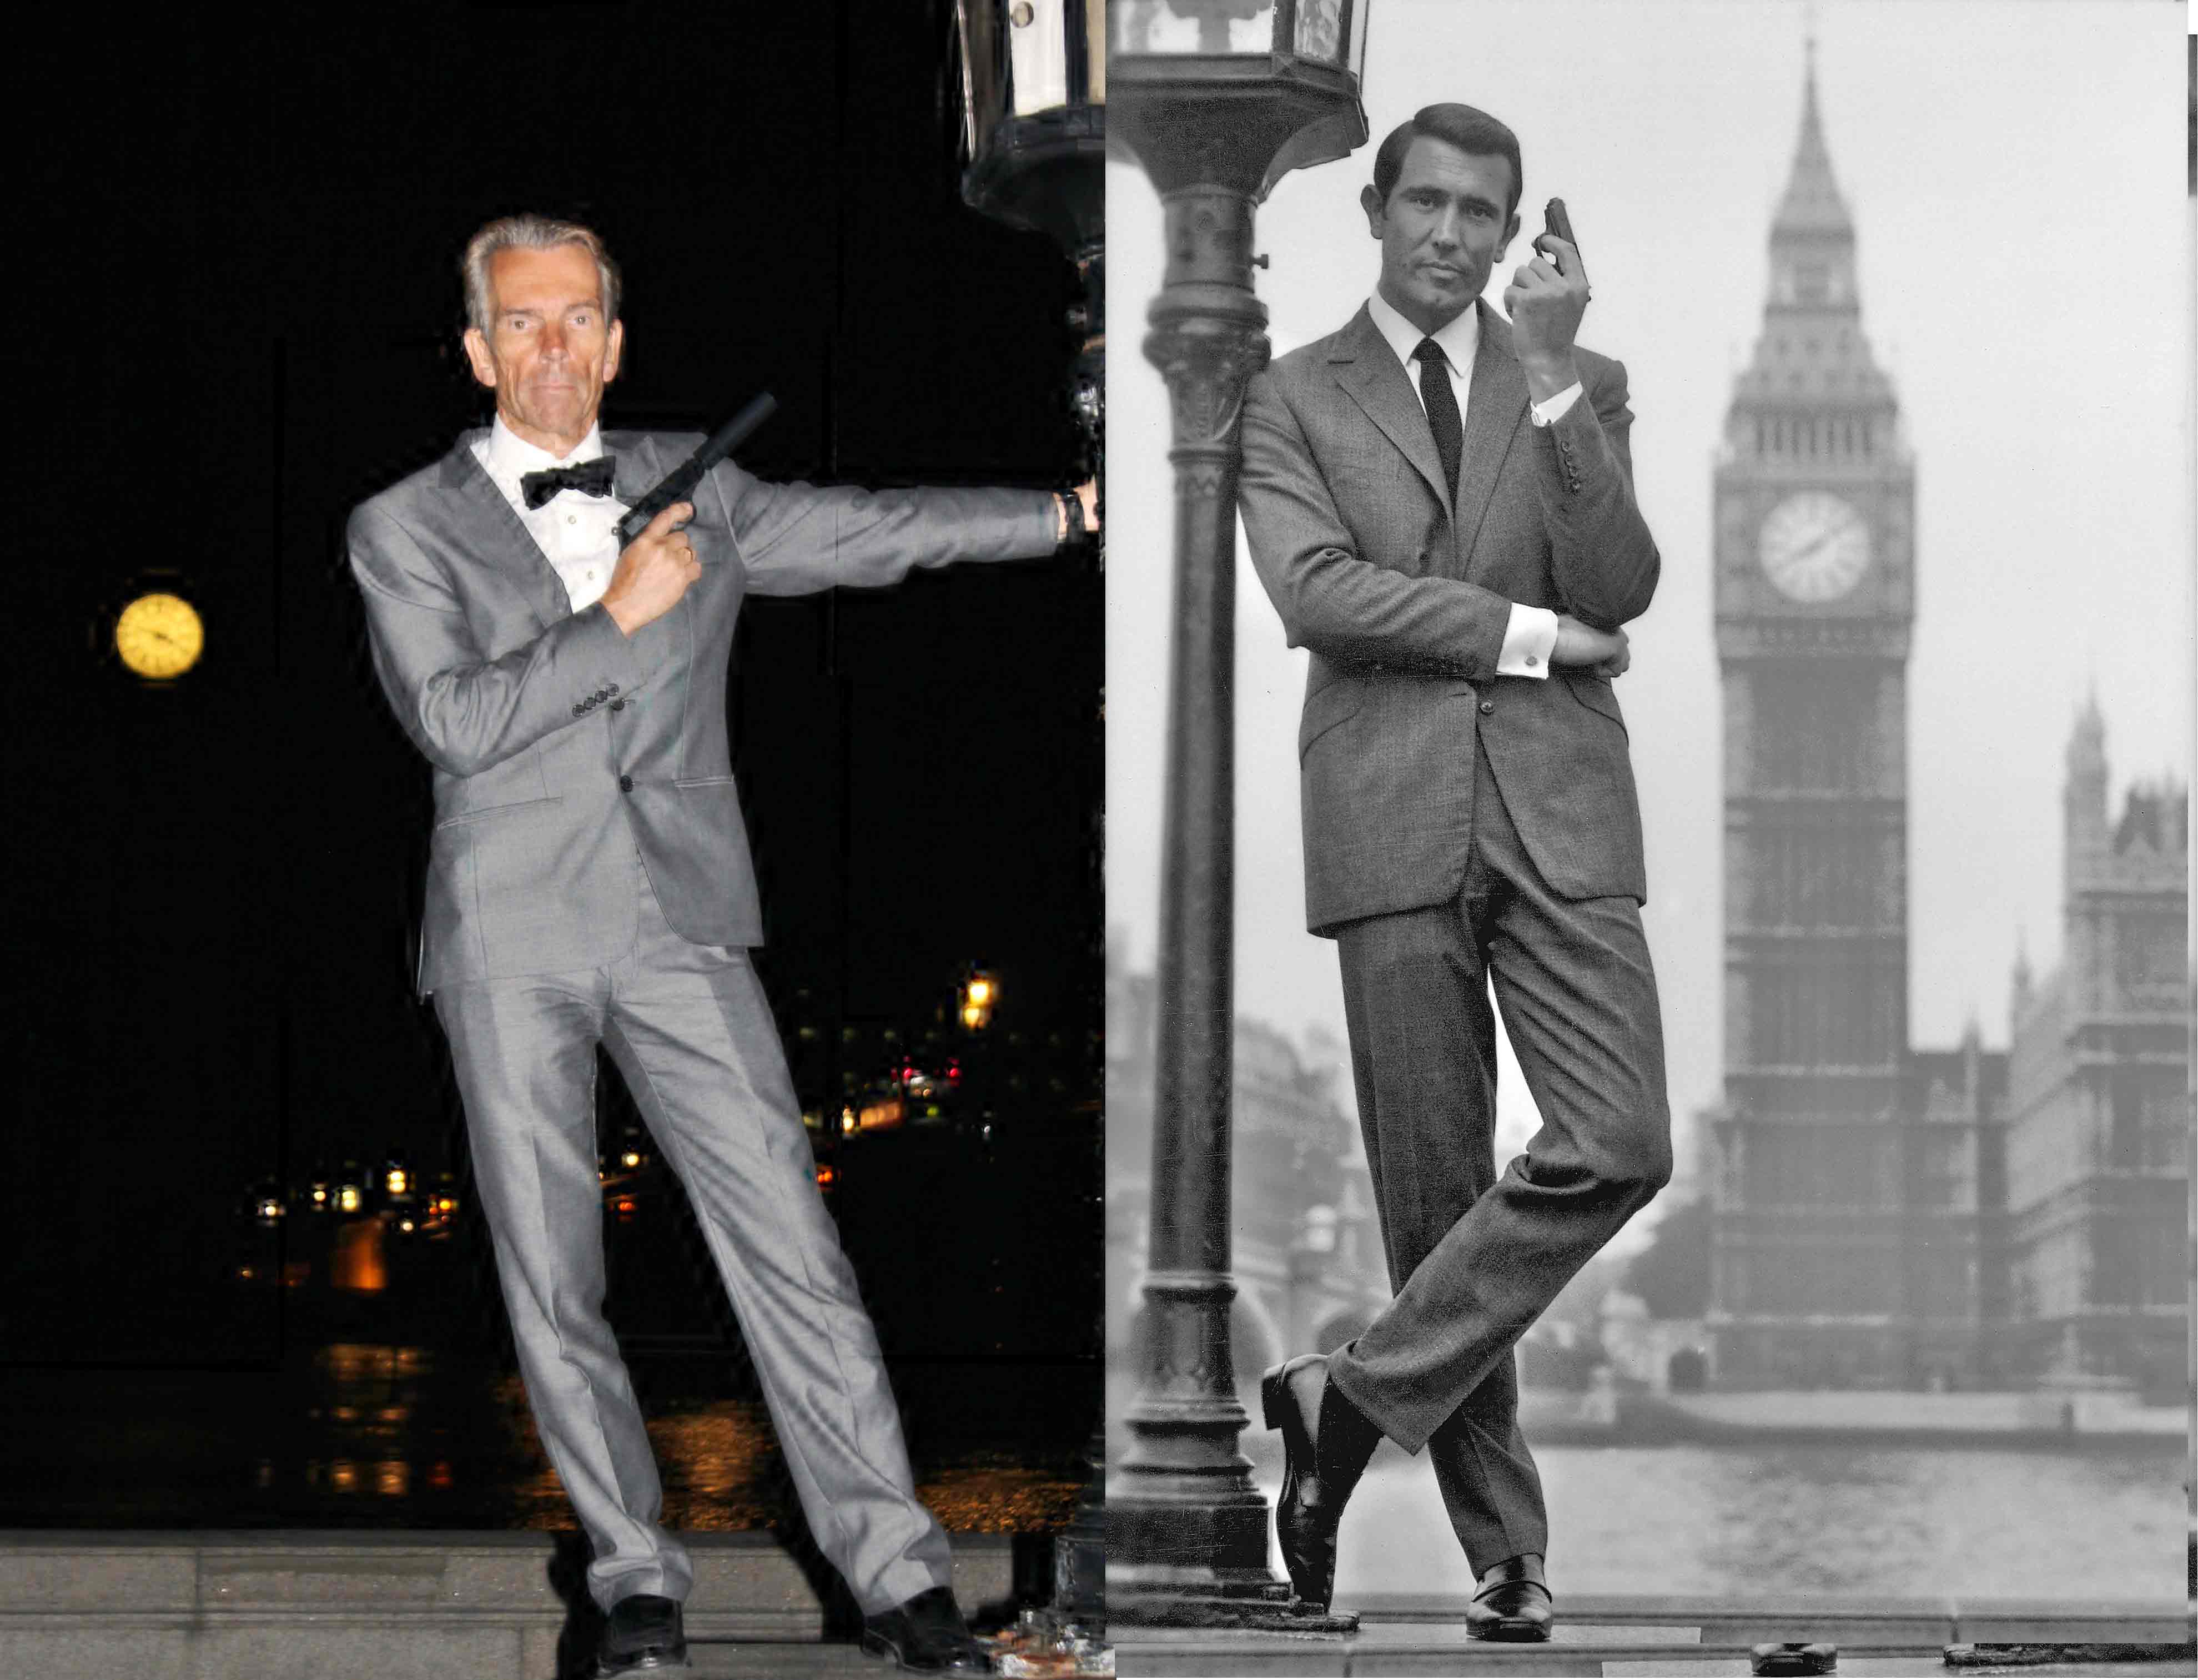 Gunnar Schäfer James Bond and George Lazenby as James Bond Big Ben London